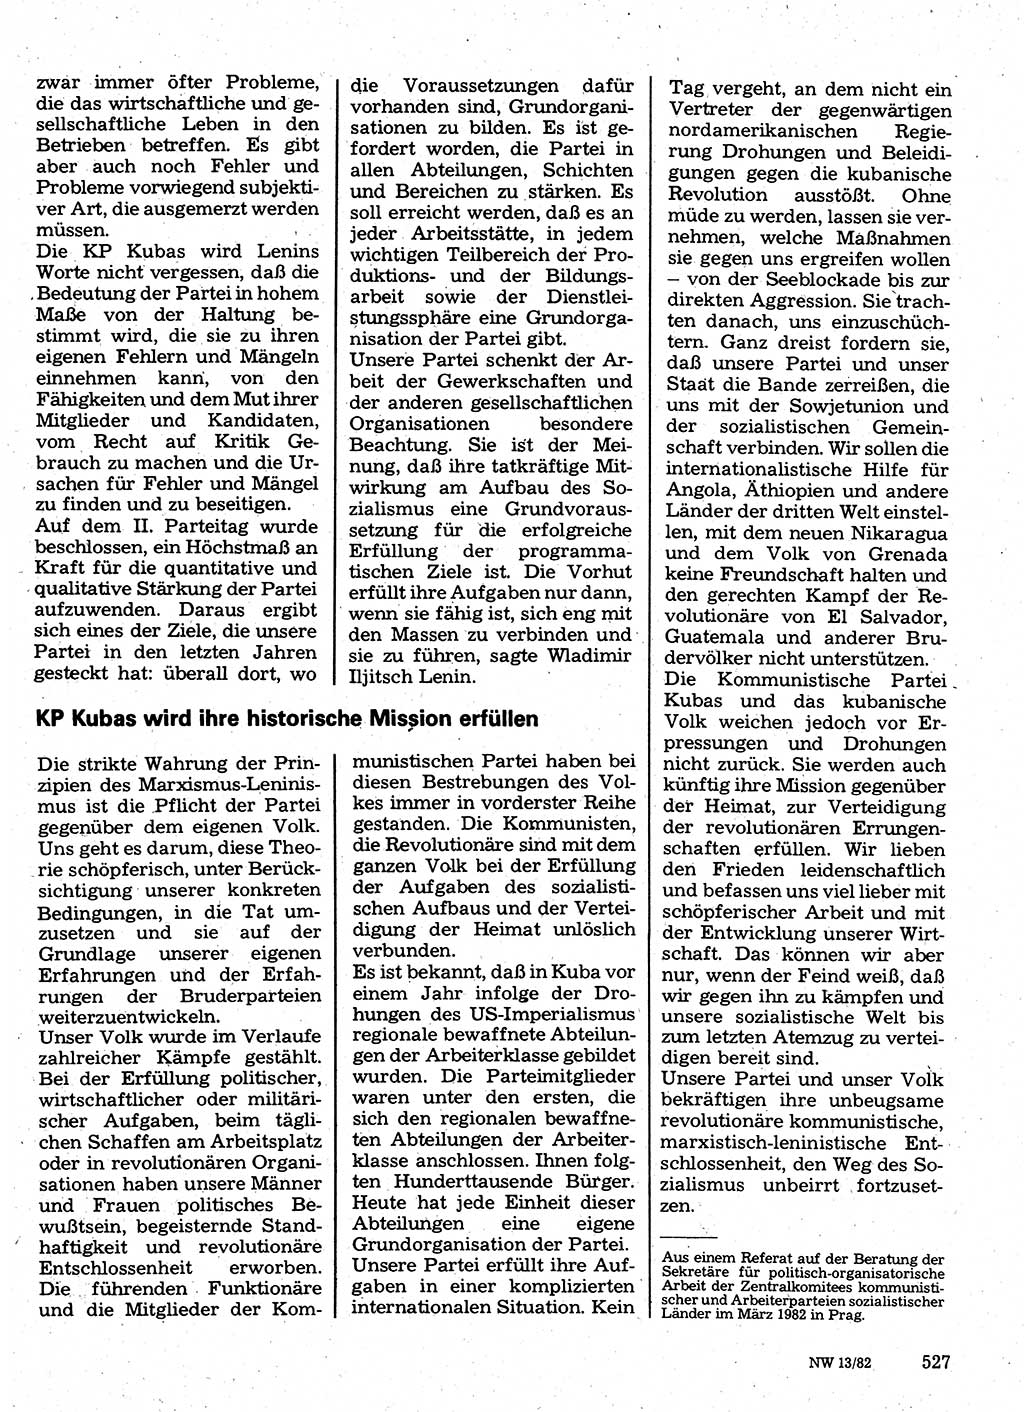 Neuer Weg (NW), Organ des Zentralkomitees (ZK) der SED (Sozialistische Einheitspartei Deutschlands) für Fragen des Parteilebens, 37. Jahrgang [Deutsche Demokratische Republik (DDR)] 1982, Seite 527 (NW ZK SED DDR 1982, S. 527)